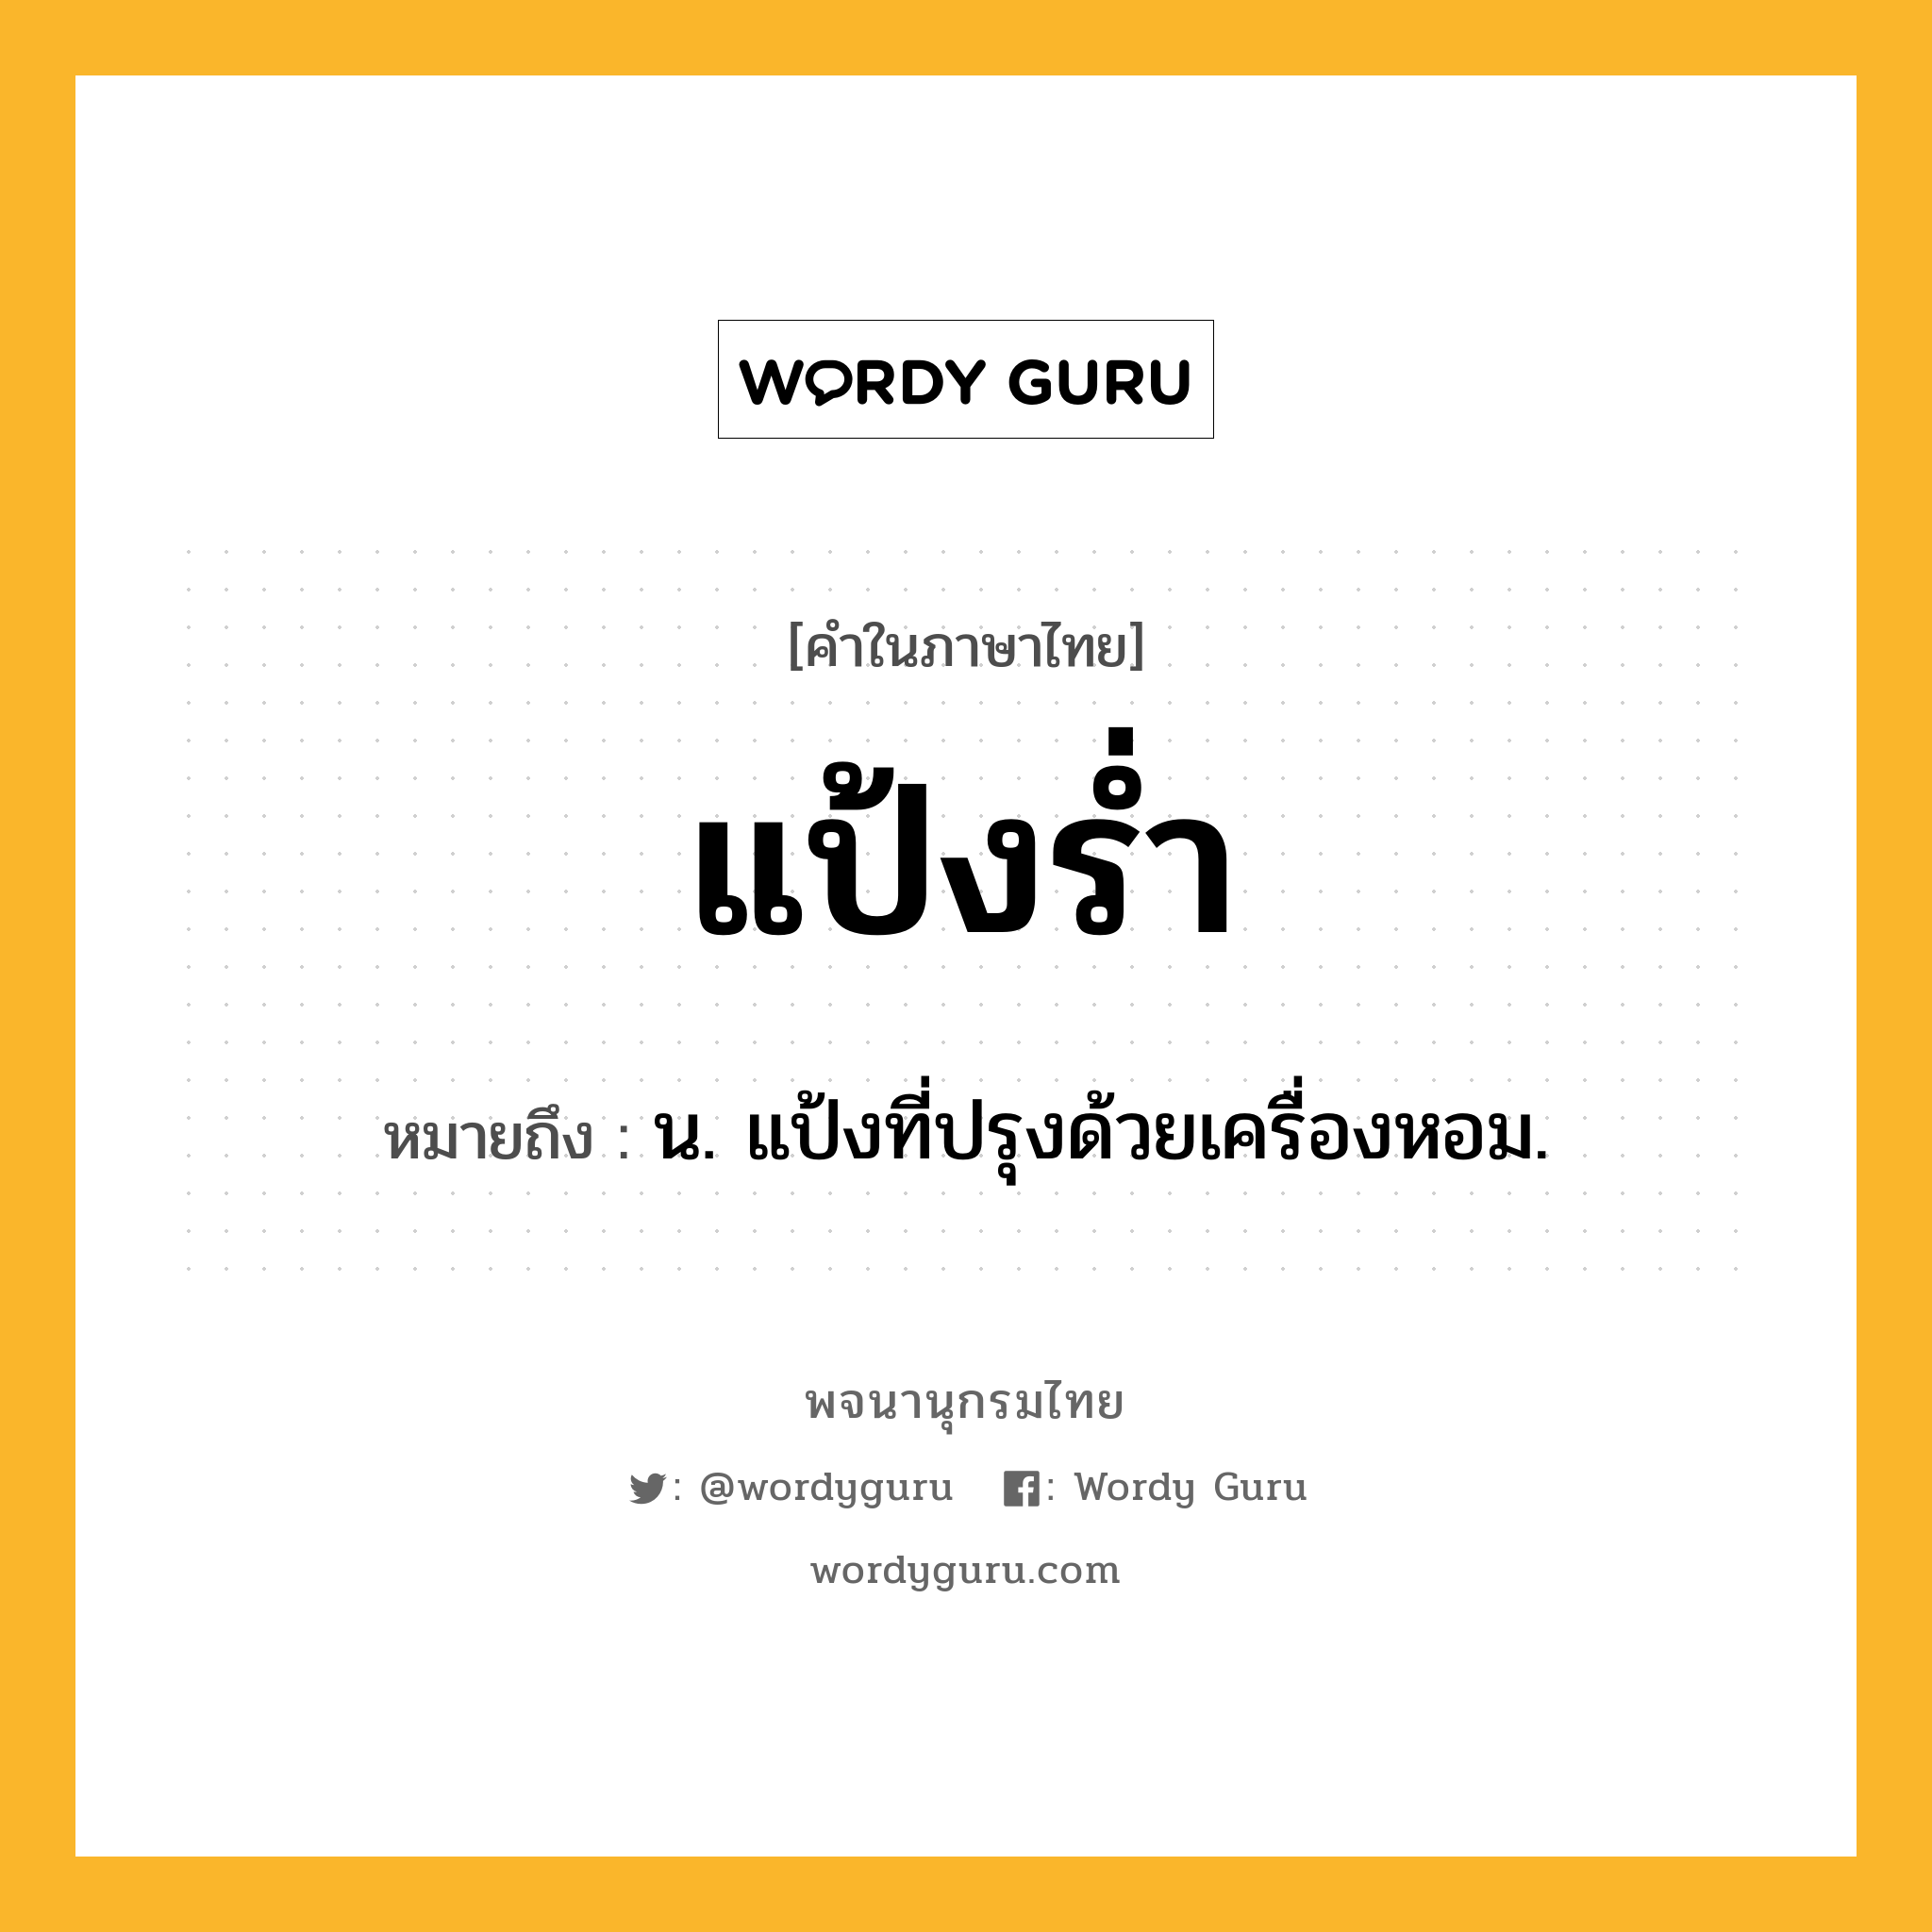 แป้งร่ำ ความหมาย หมายถึงอะไร?, คำในภาษาไทย แป้งร่ำ หมายถึง น. แป้งที่ปรุงด้วยเครื่องหอม.